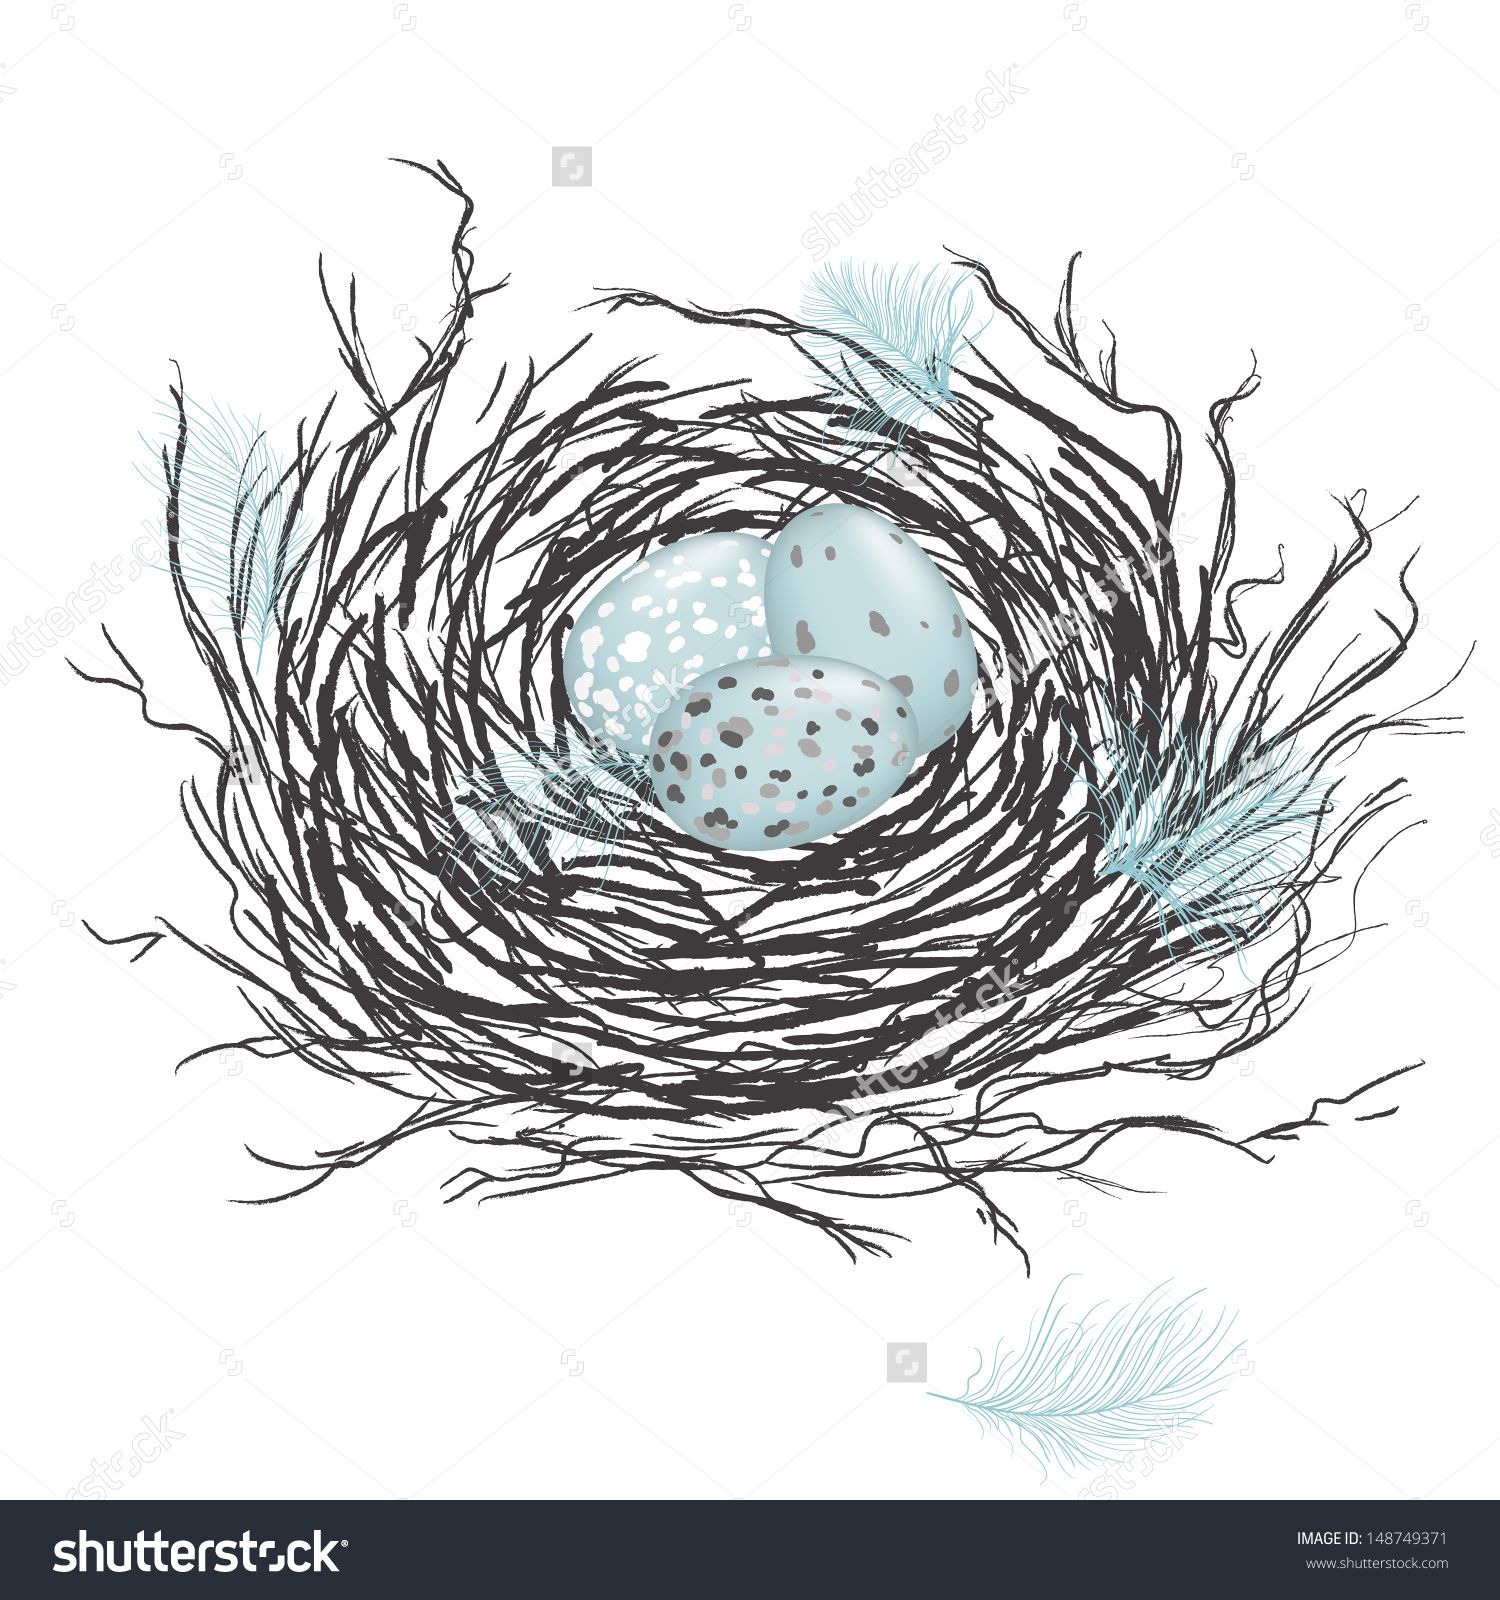 nest clipart speckled egg